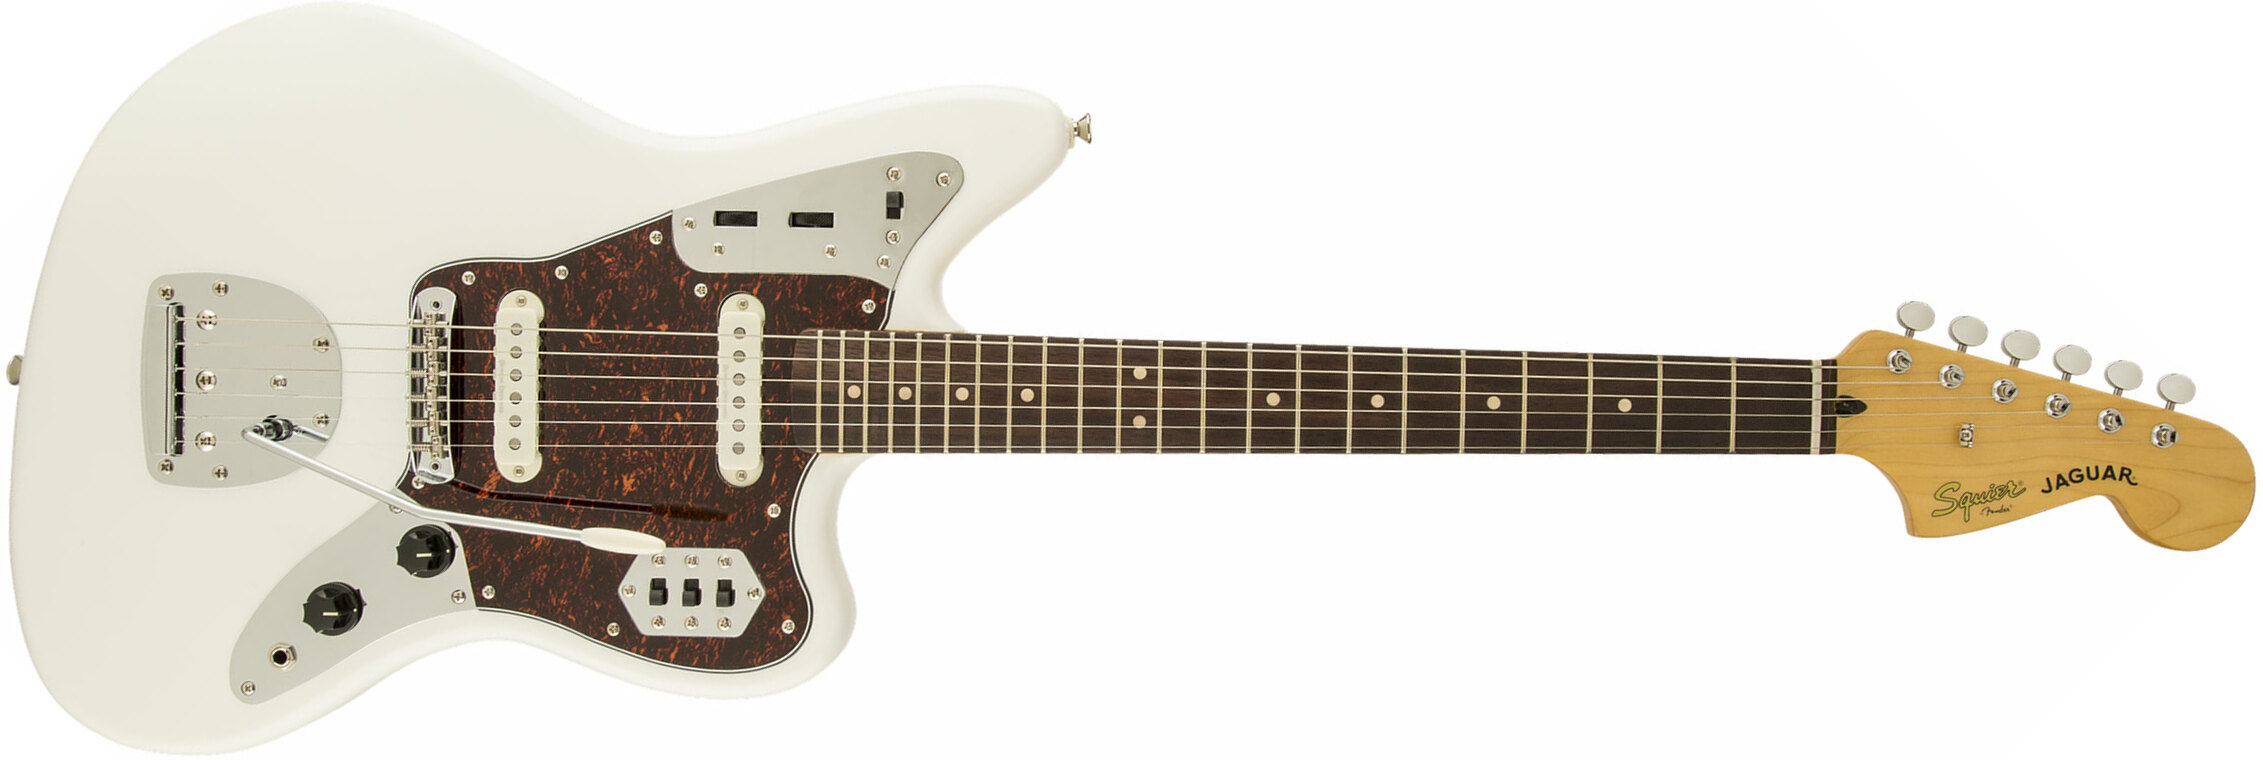 Squier Jaguar Vintage Modified Ss Lau - Olympic White - Retro rock electric guitar - Main picture